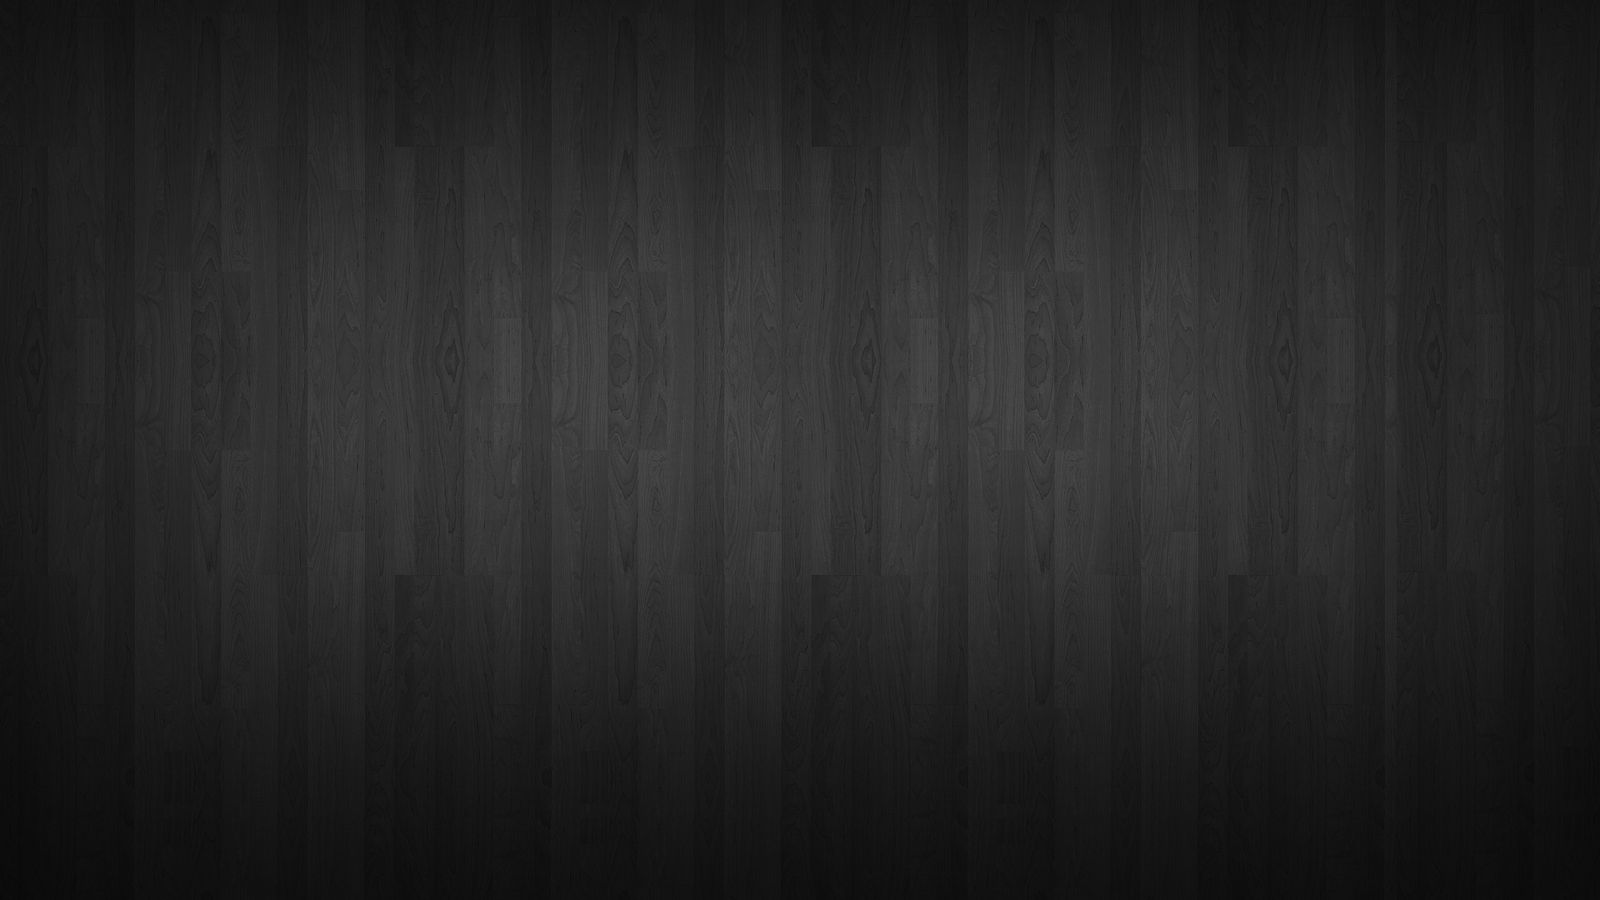 Hình nền đen trắng gỗ: Thư giãn và thưởng thức sự tinh tế của hình nền đen trắng gỗ. Sự pha trộn tuyệt vời giữa màu đen và trắng cùng với bề mặt gỗ tự nhiên làm cho hình nền trở nên đẳng cấp hơn bao giờ hết.